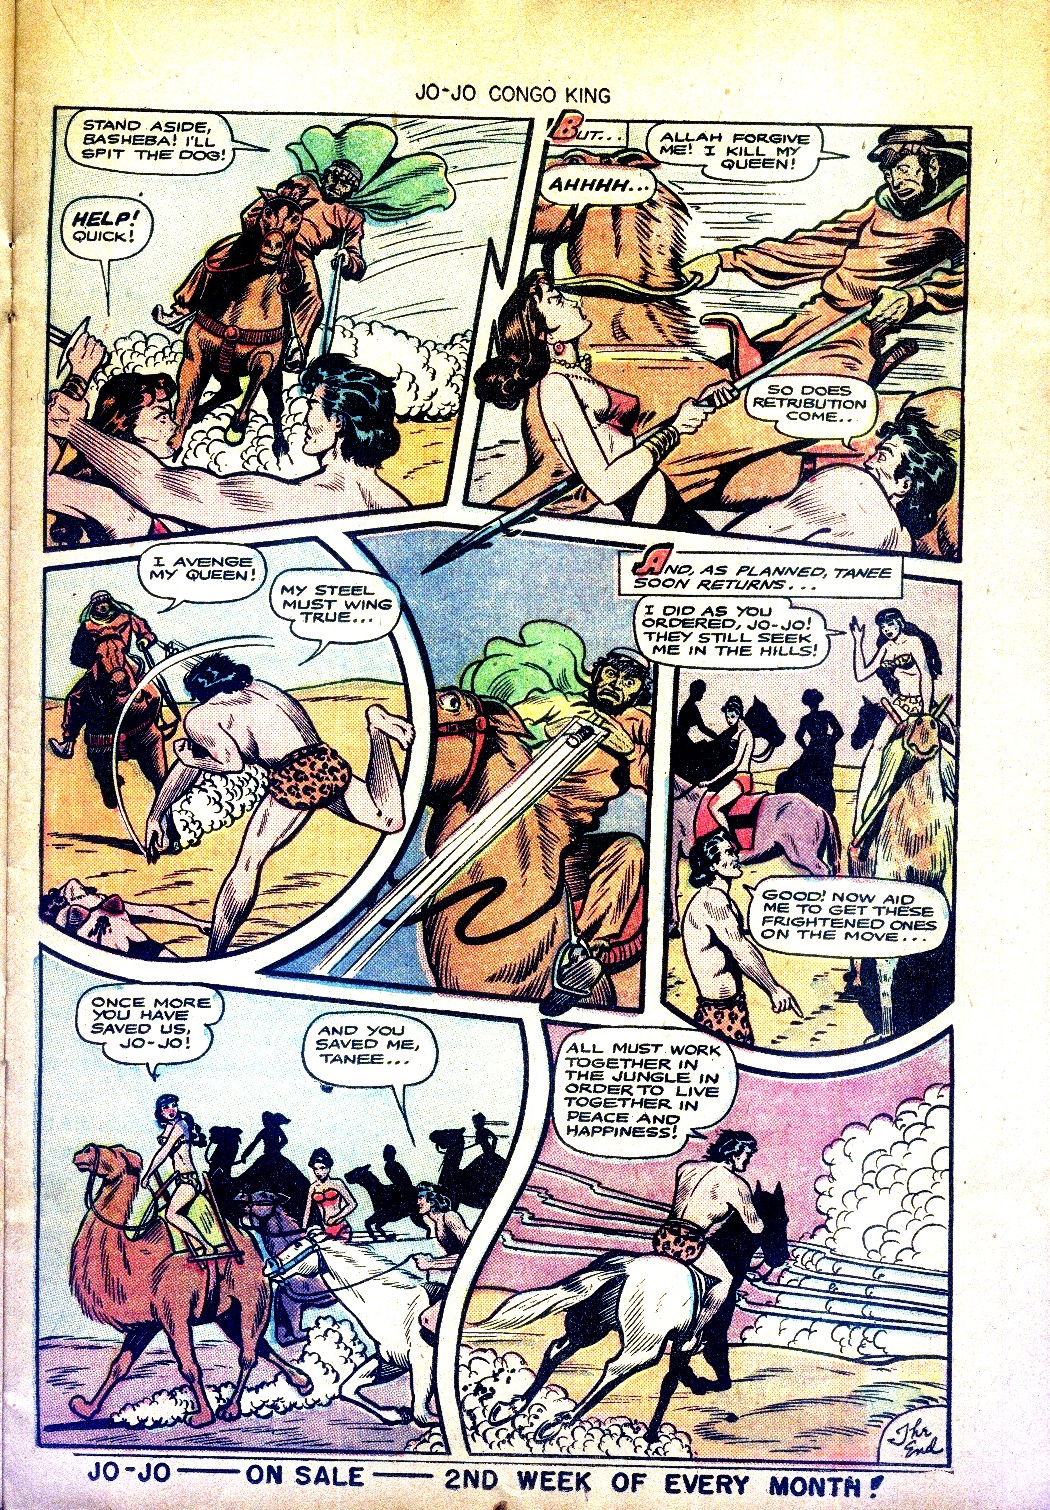 Read online Jo-Jo Congo King comic -  Issue #11 - 21